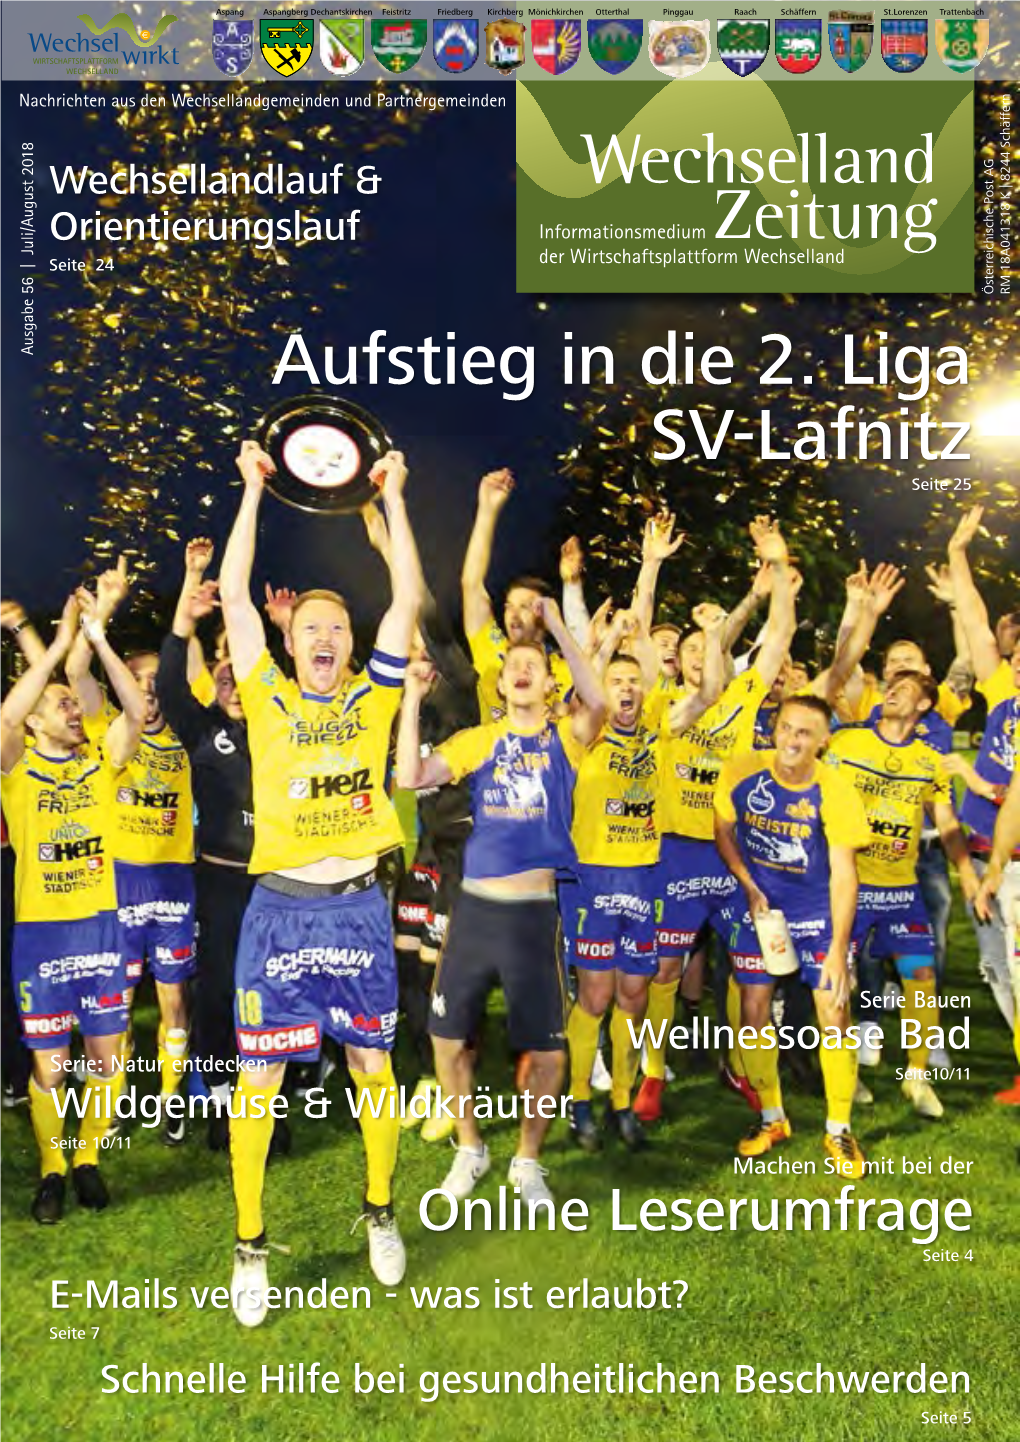 Aufstieg in Die 2. Liga SV-Lafnitz